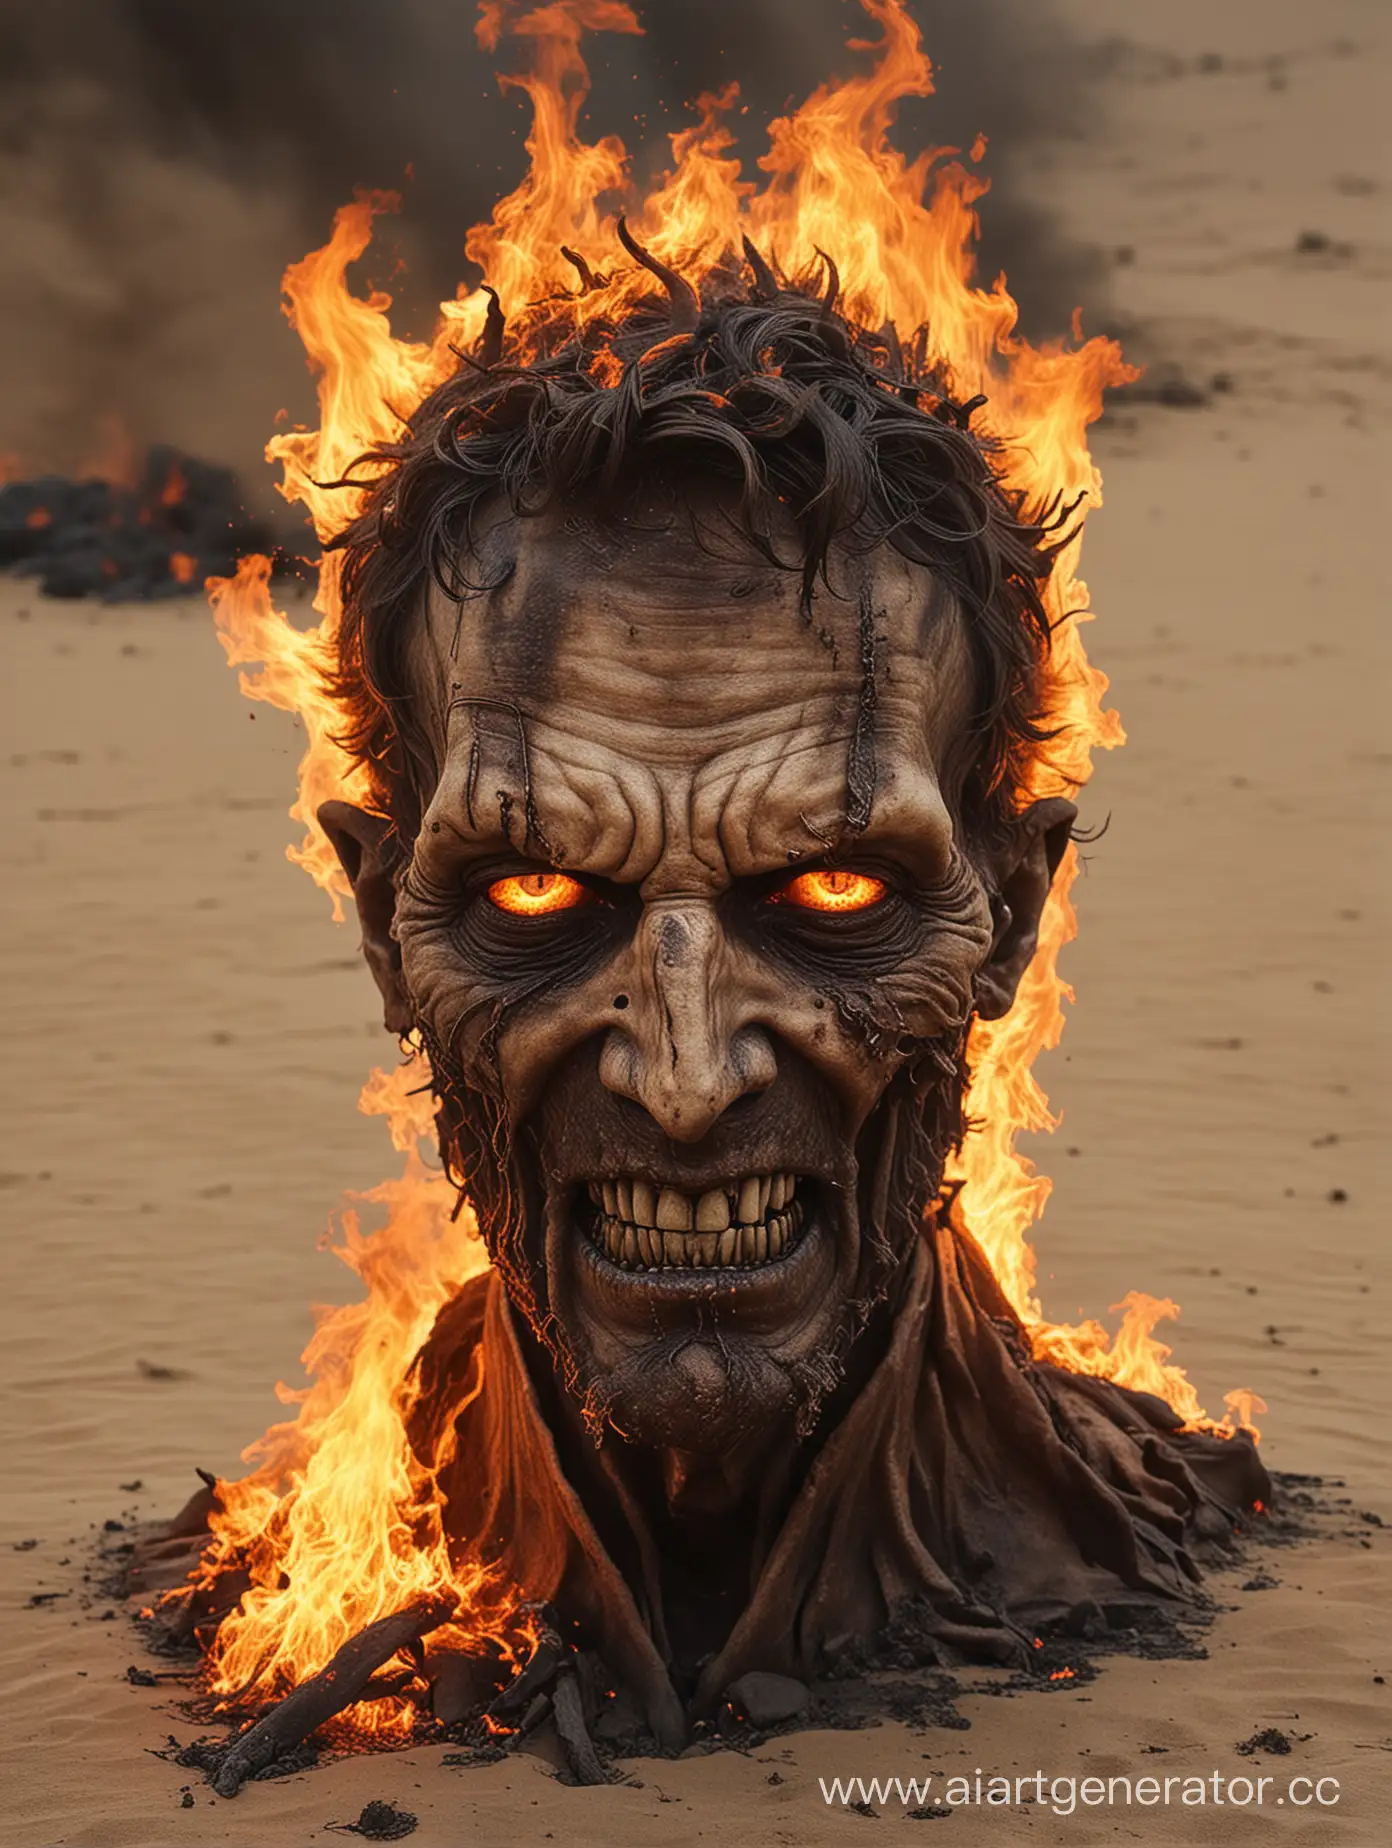  Coloque Lucifer com a face deformada  e mosttuosa envolto pelo chamas no deserto em chamas do inferno agoniza de sobre o solo